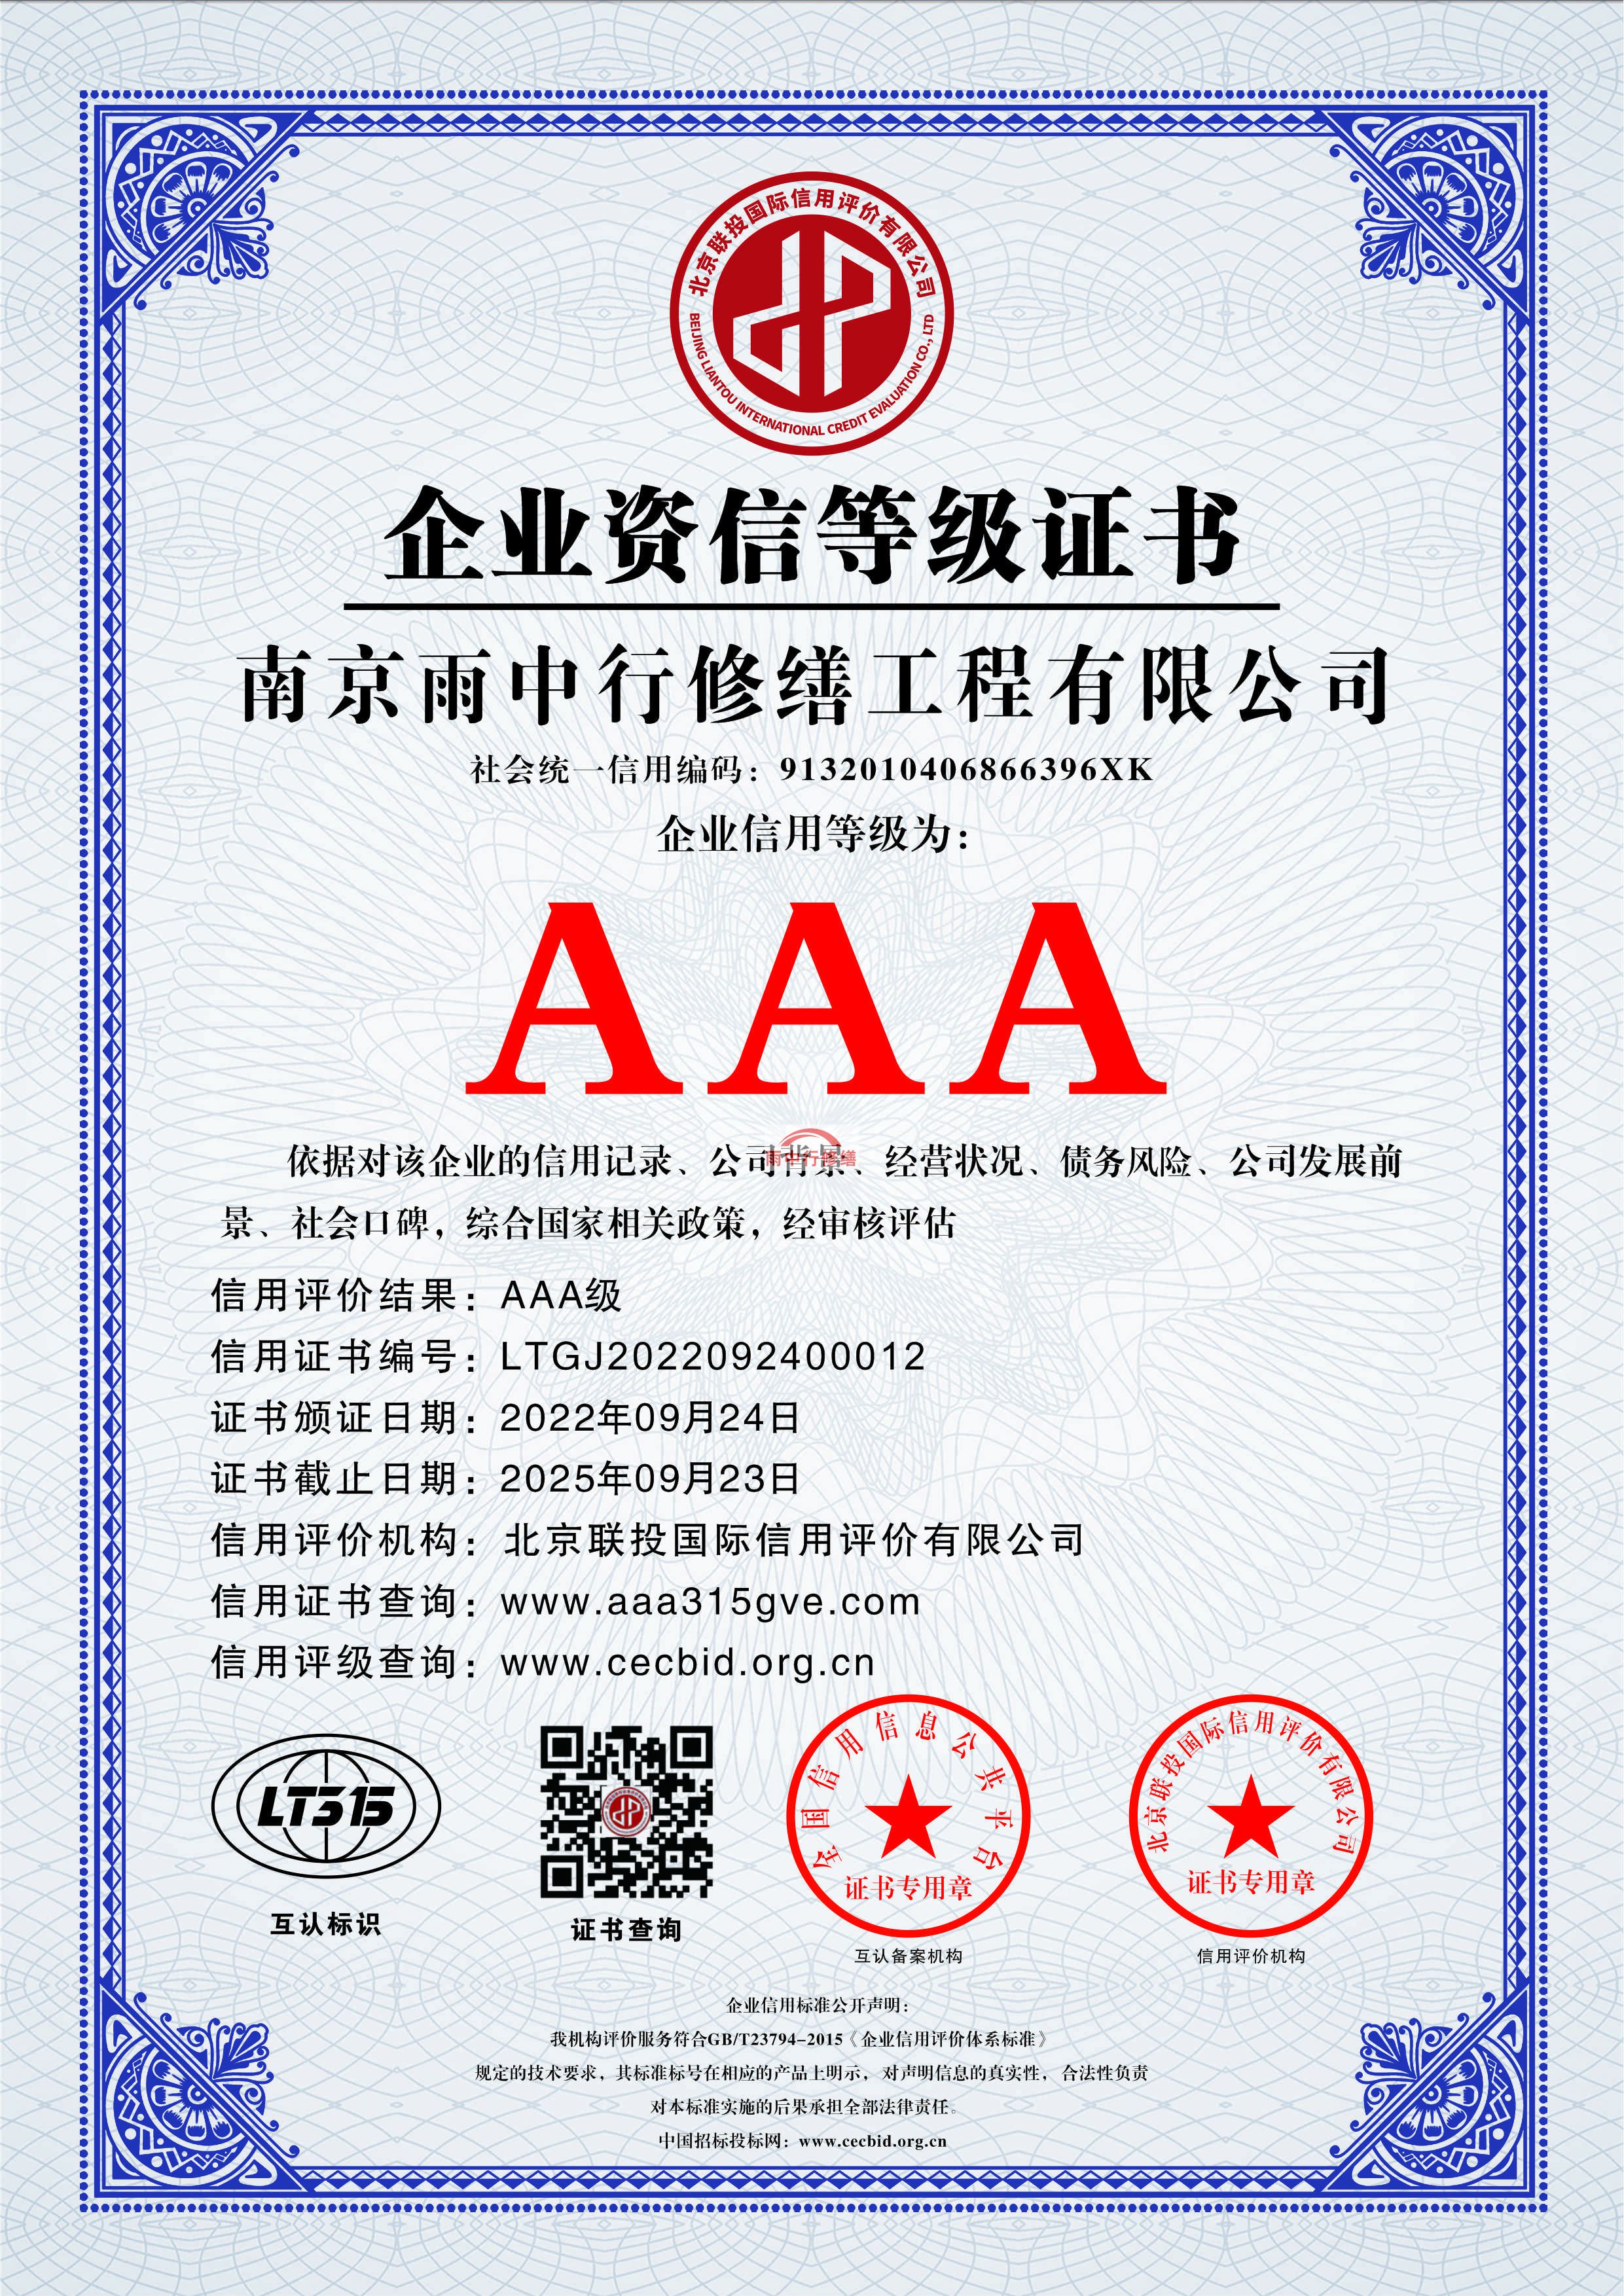 西藏雨中行修缮授予AAA级诚信企业